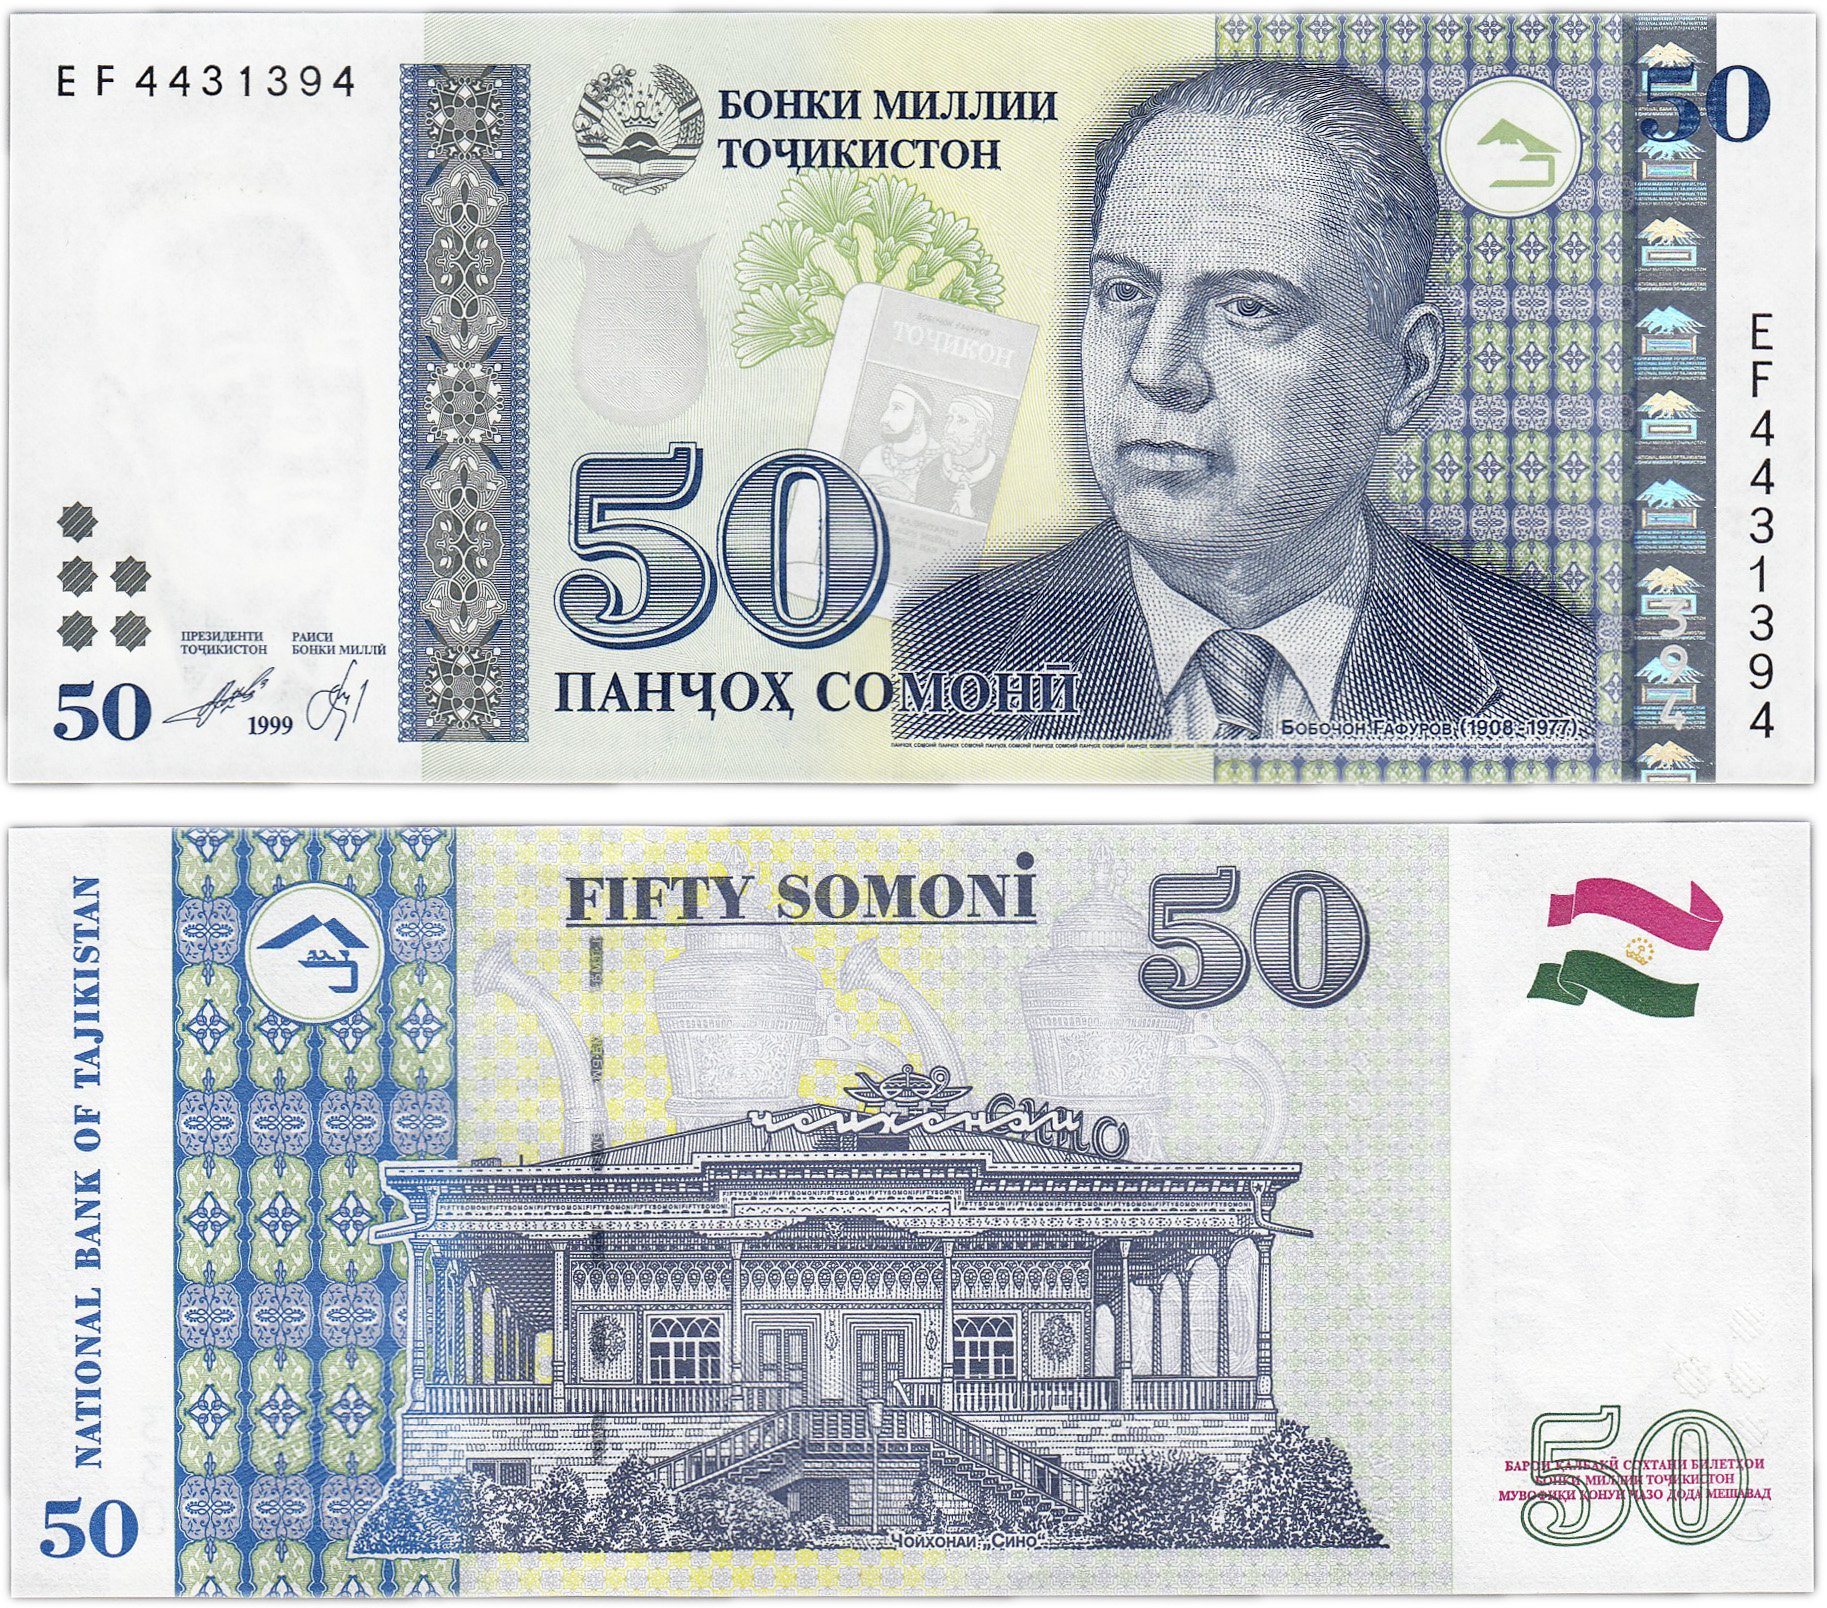 500 сомони таджикистан в рублях. 100 Сомони 1999. Таджикский купюры 500 Сомони. Таджикистан банкнота 20 Сомони 1999. Деньги Таджикистана 500 Сомони.